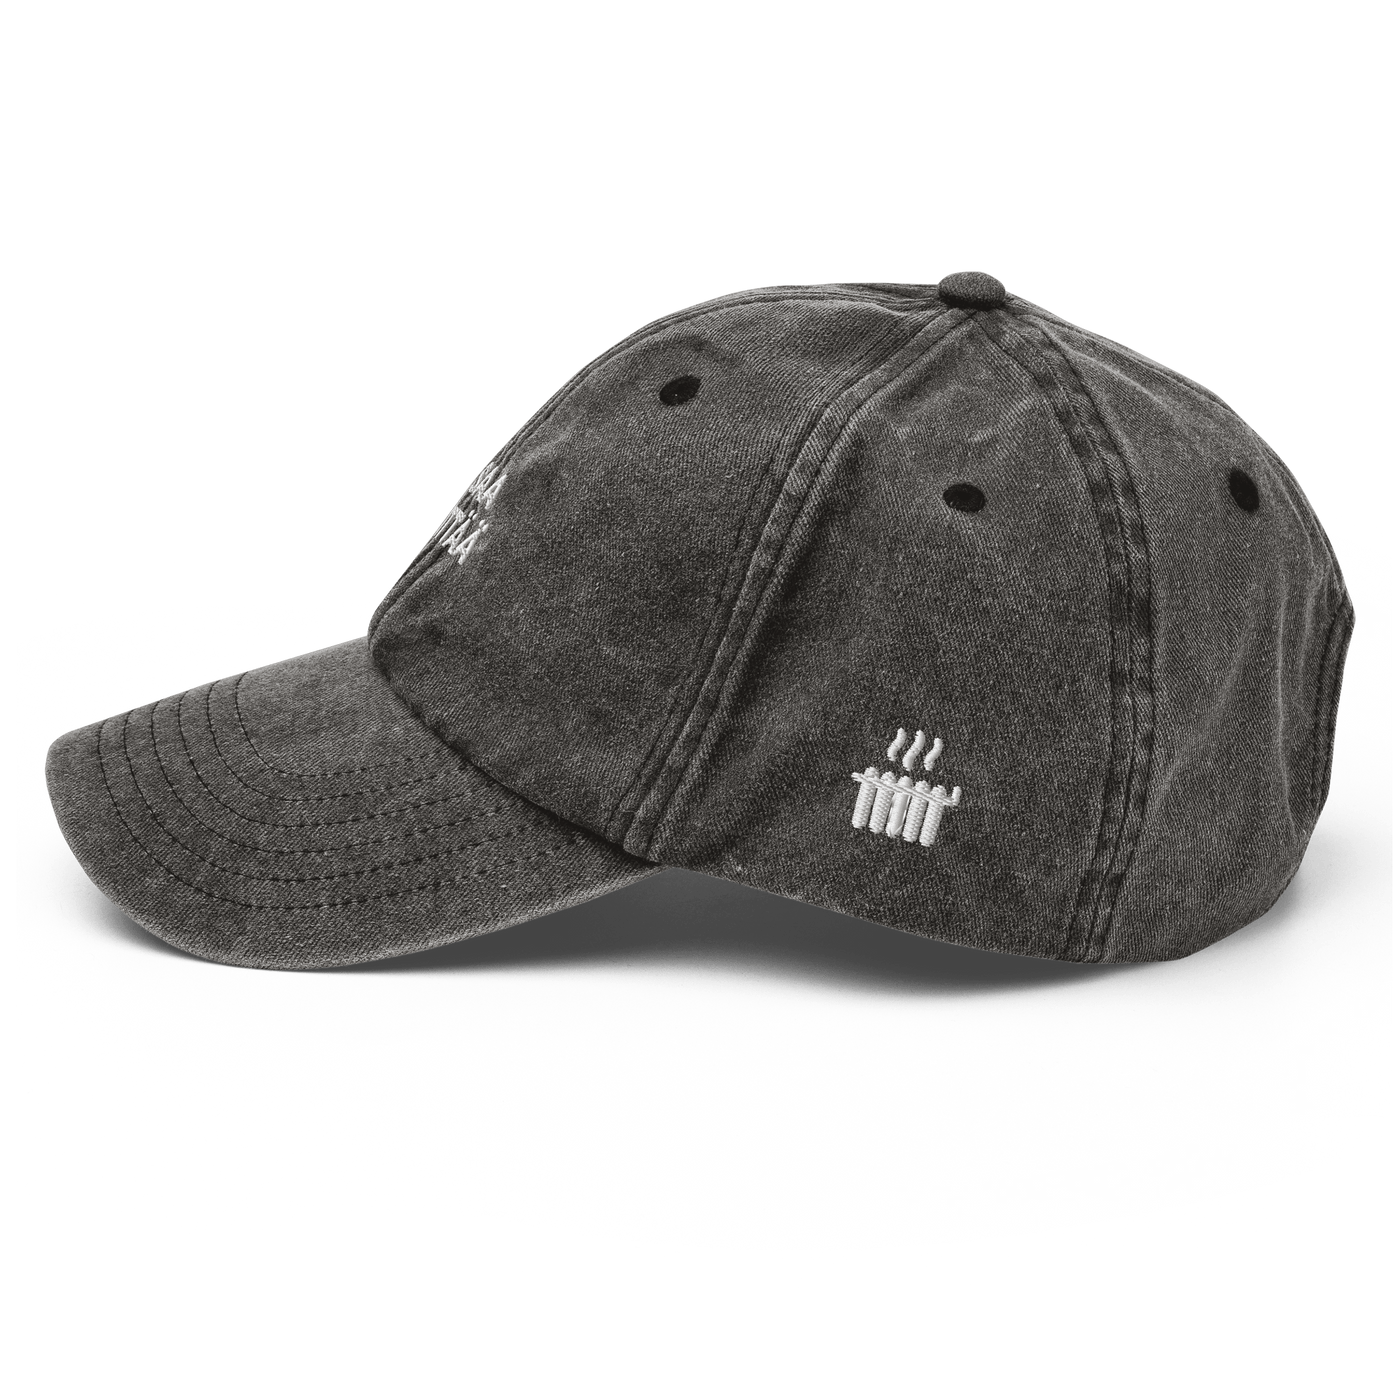 EI SAA PEITTÄÄ - Vintage Hat - Vintage Black - - Just Another Cap Store